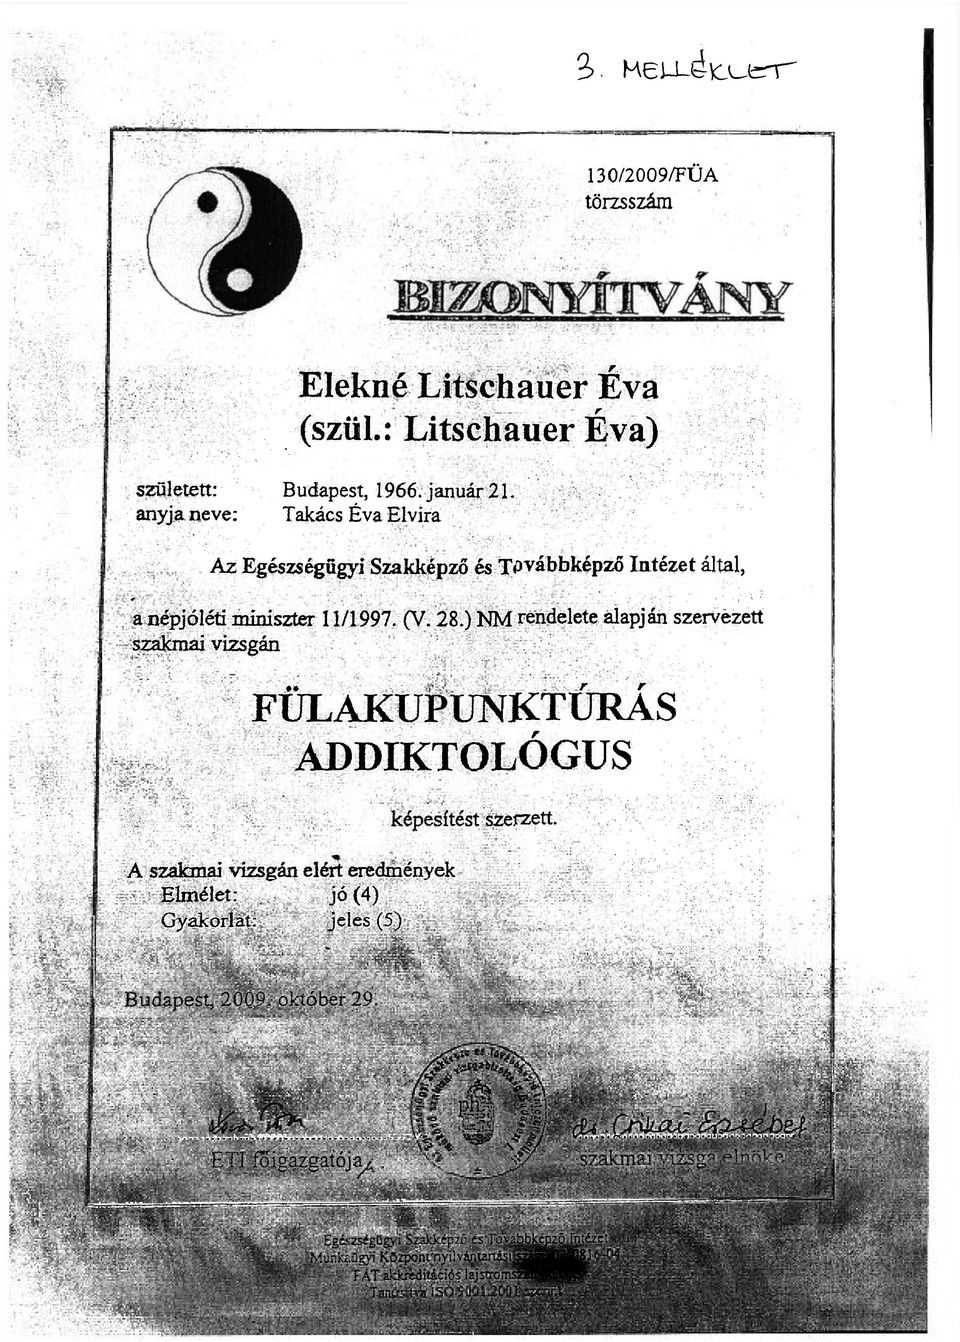 Elekné Litschauer Éva (szül.: Litschauer Éva) - PDF Ingyenes letöltés